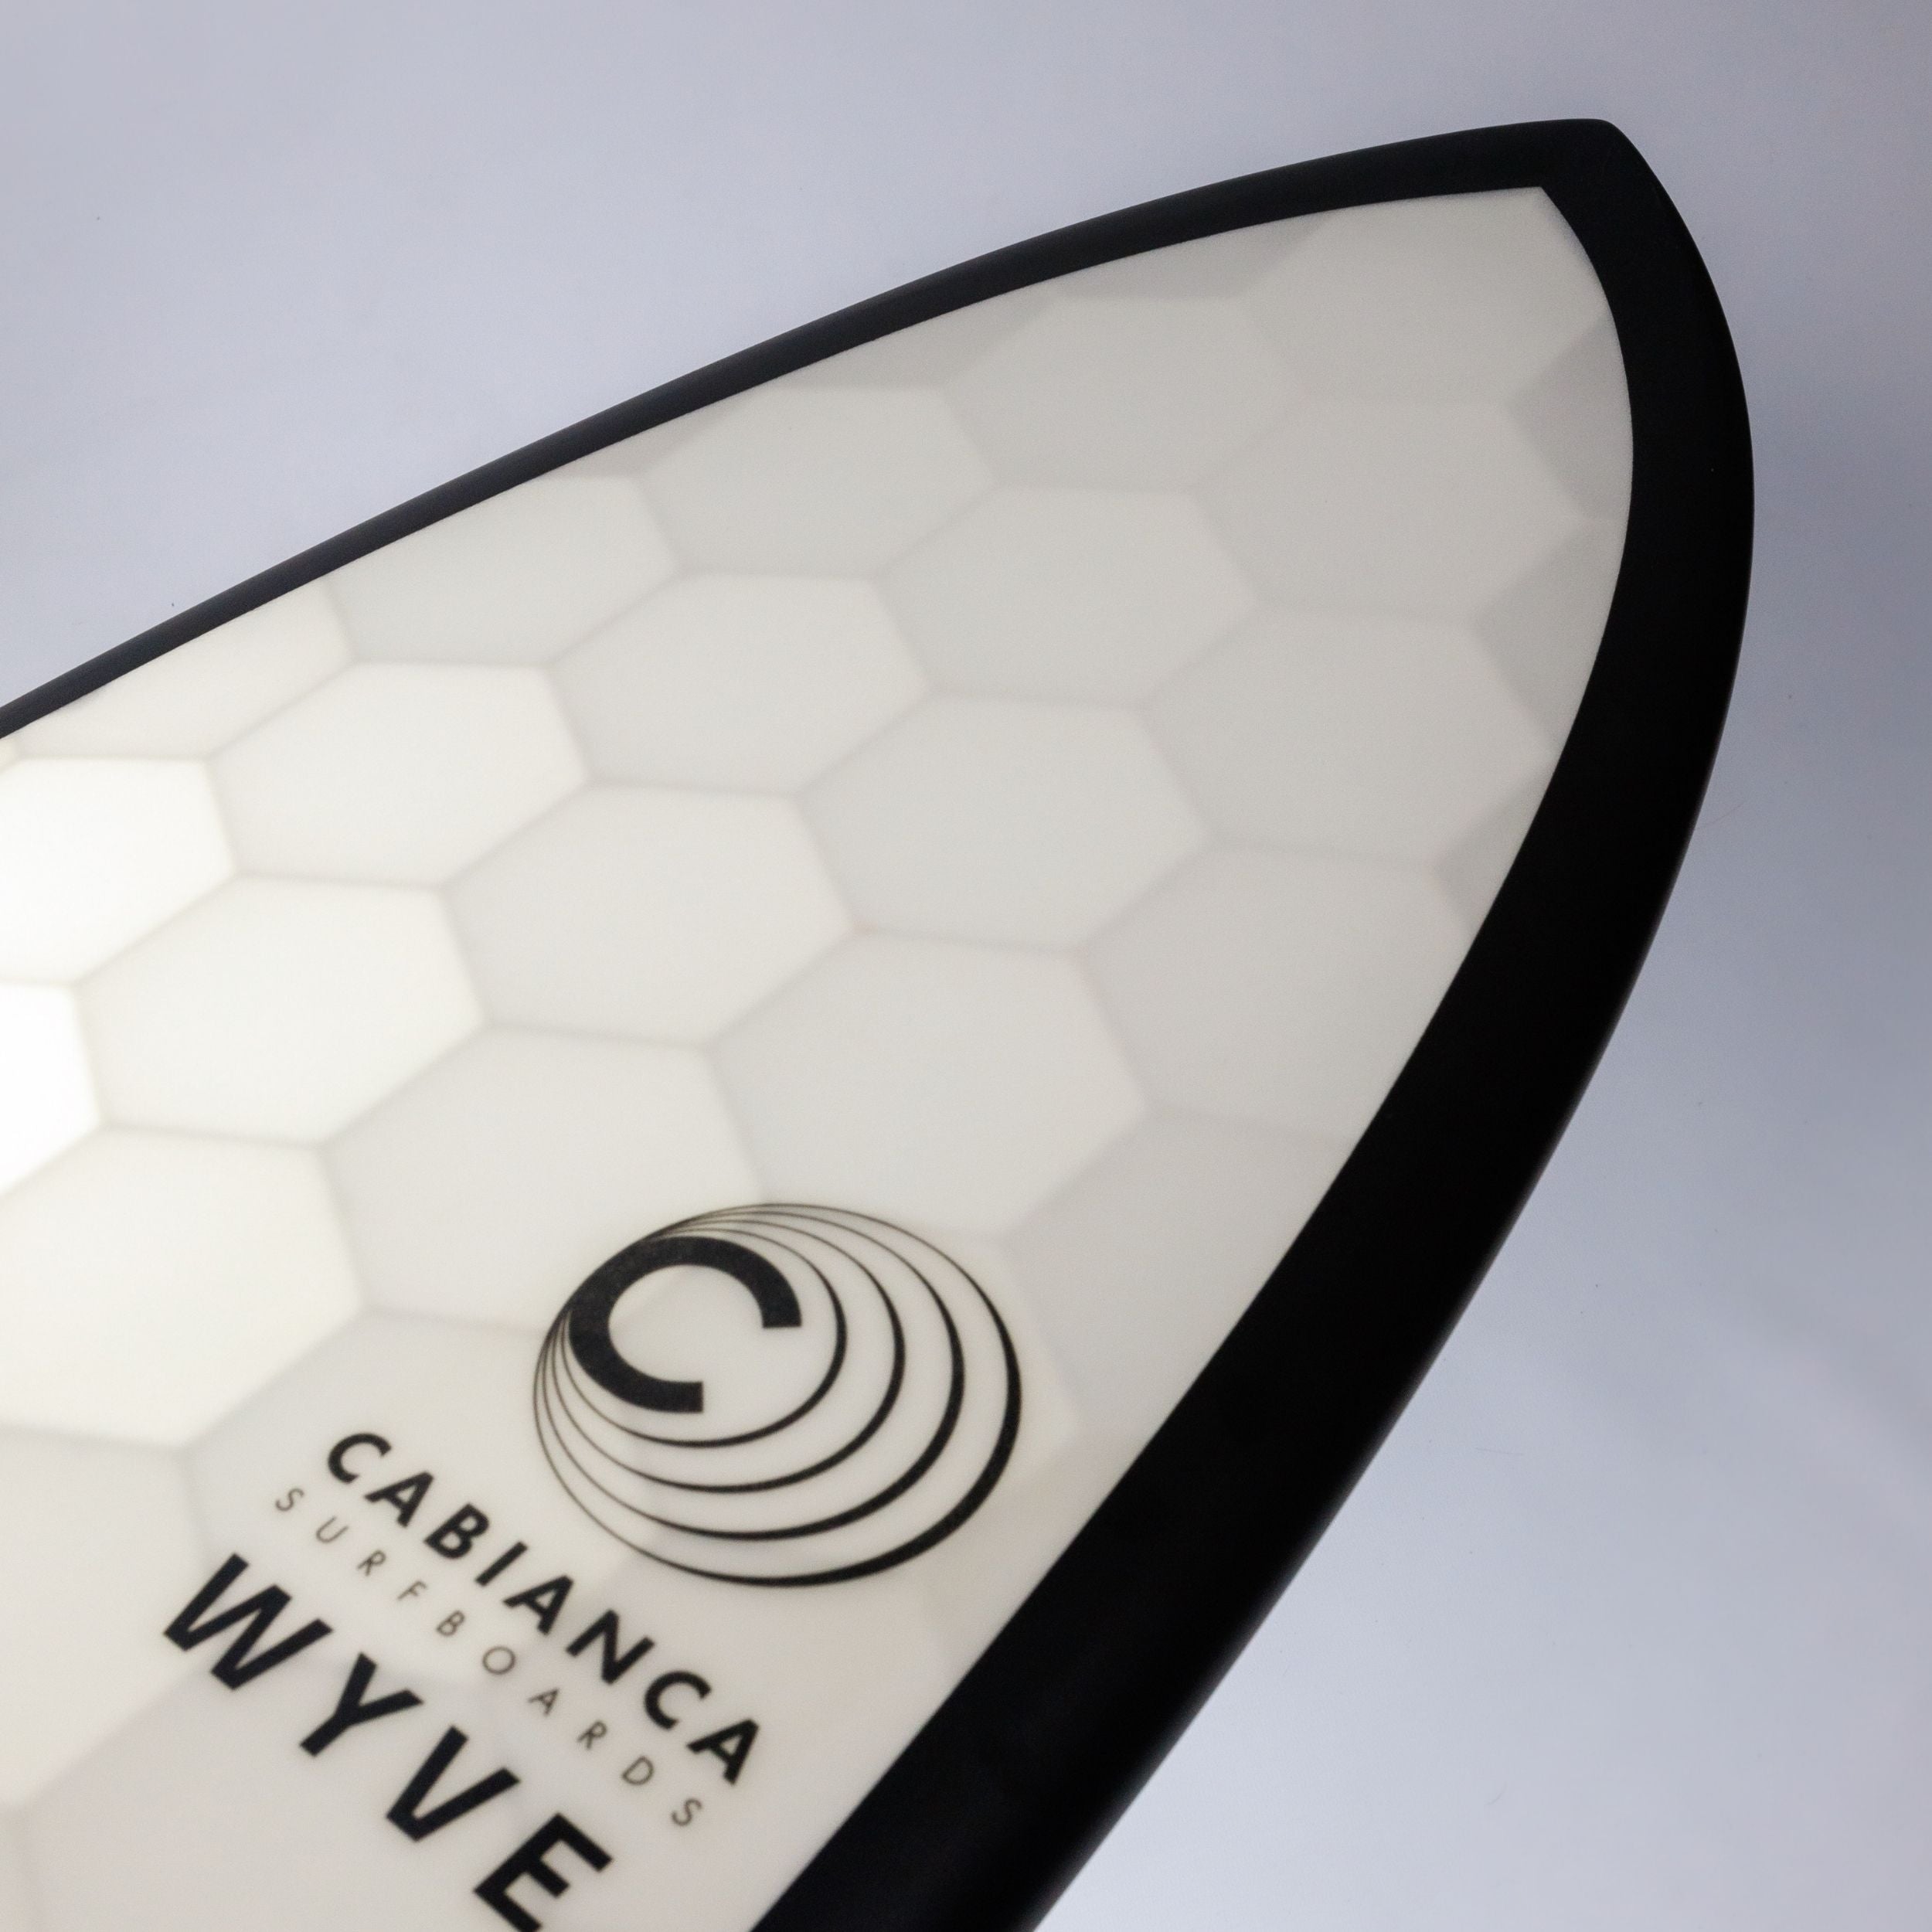 Nose d'une planche de surf Wyve imprimée en 3D en France